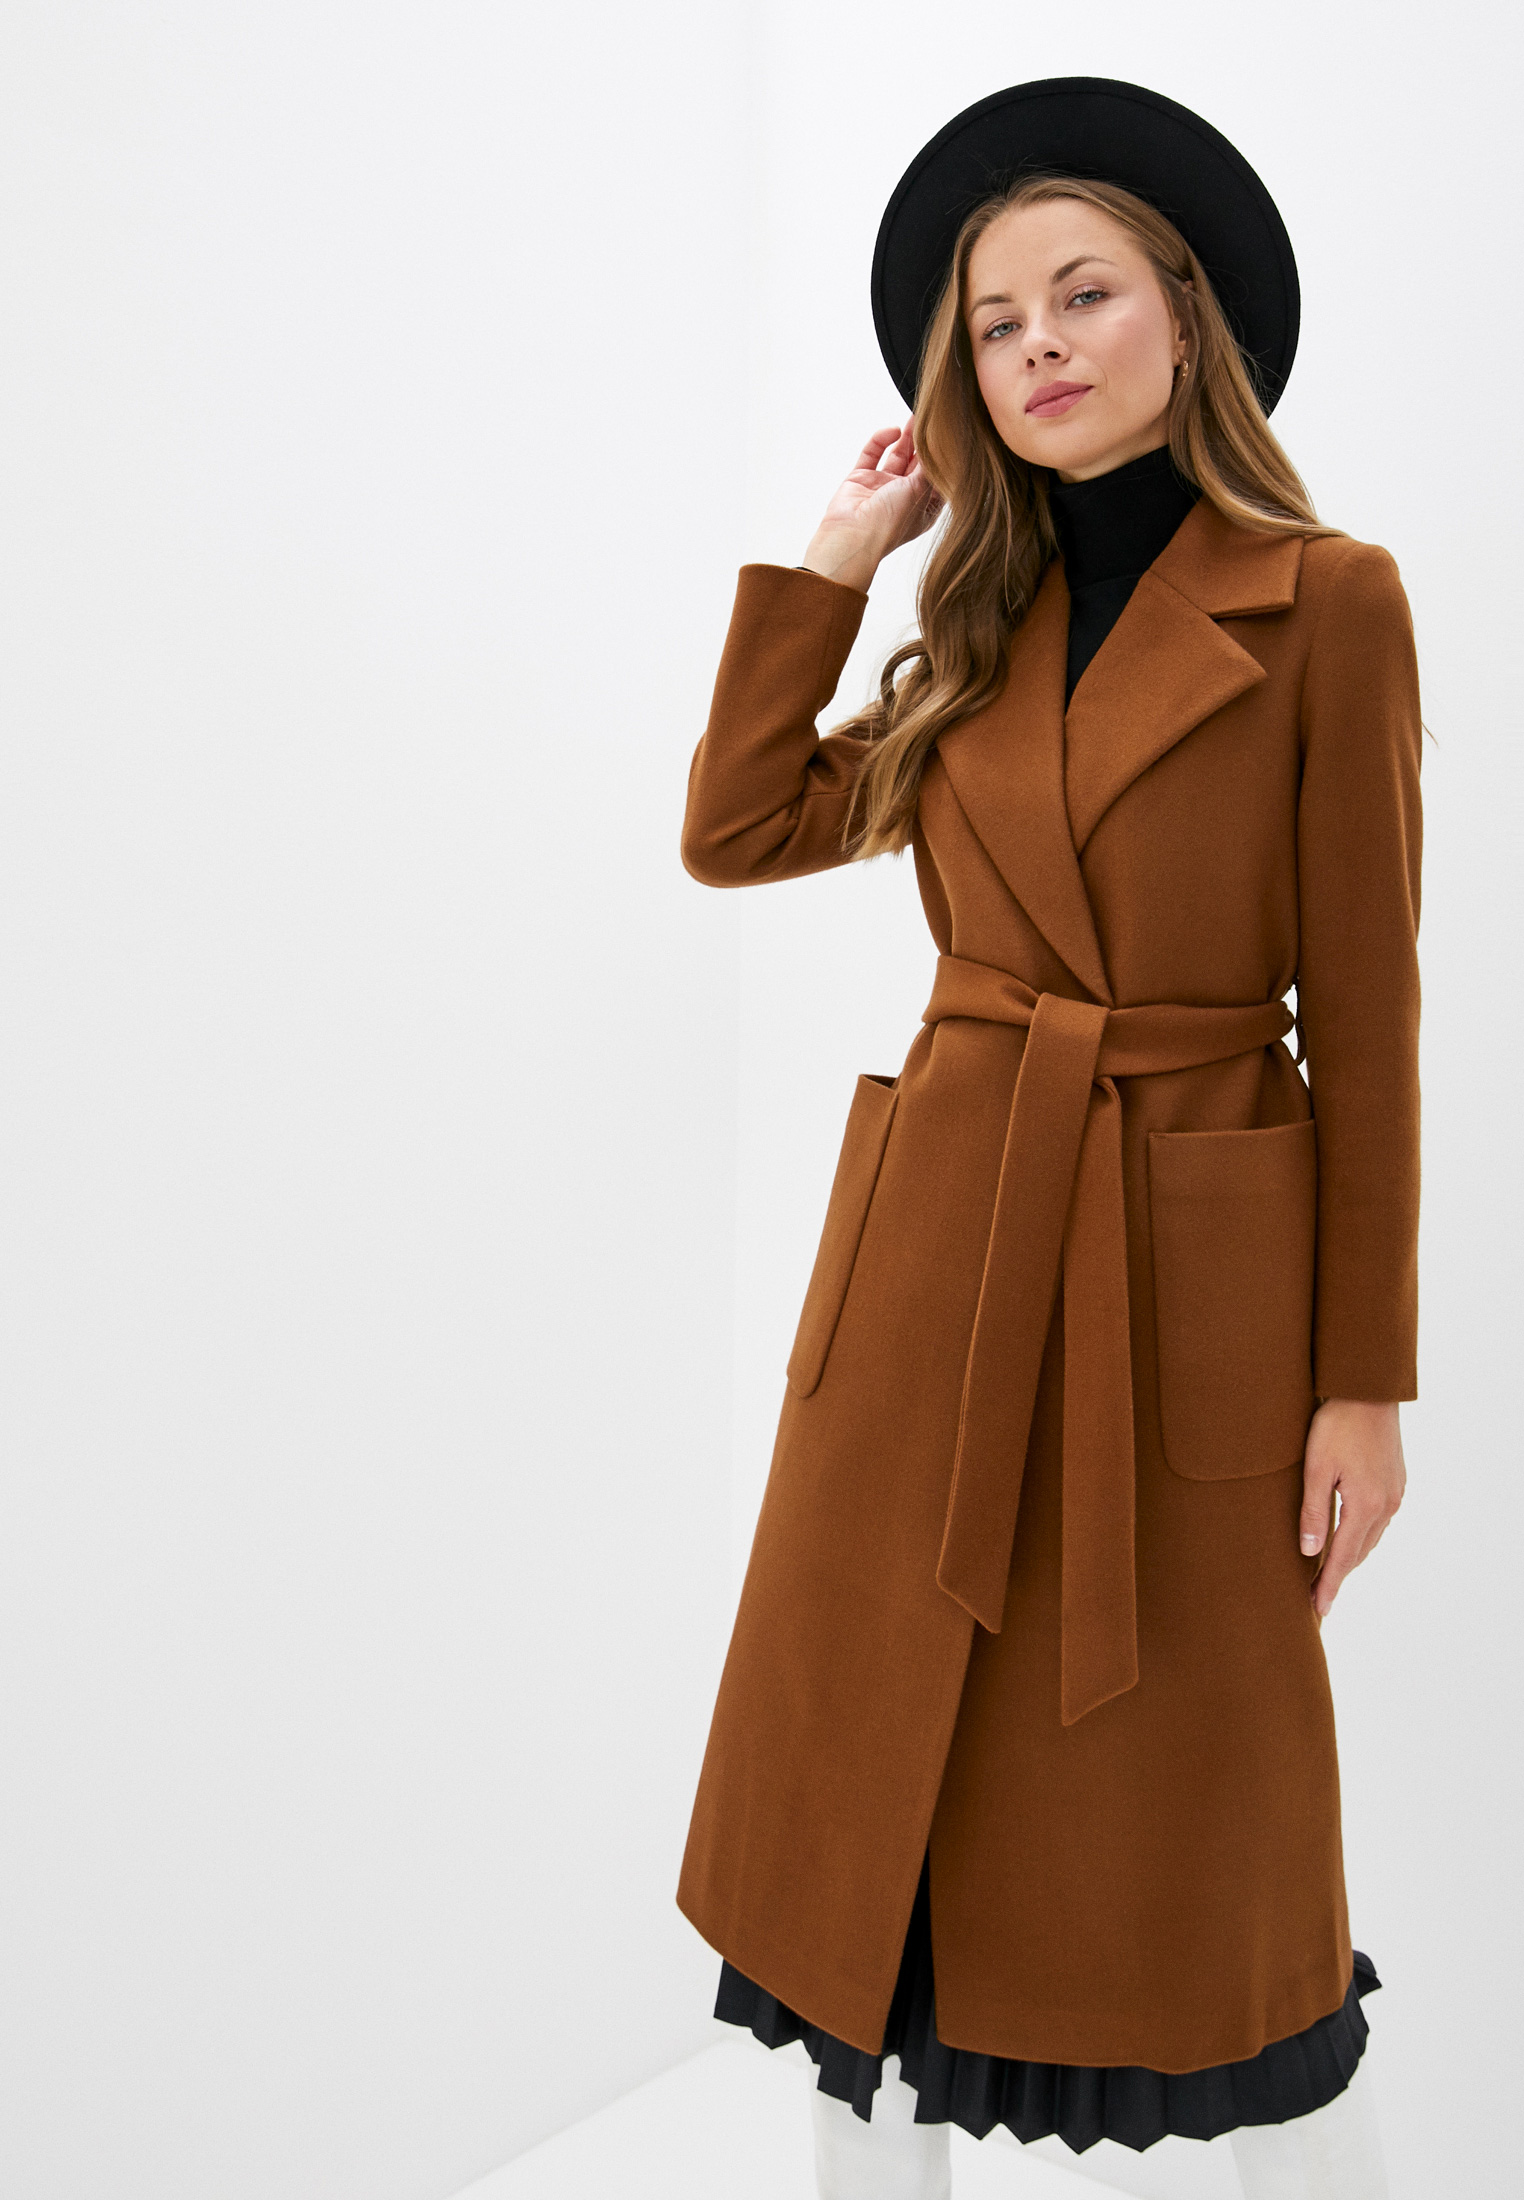 Купить коричневое пальто. Коричневое пальто. Коричневое пальто женское. Пальто коричневого цвета. Коричневое полупальто женское.